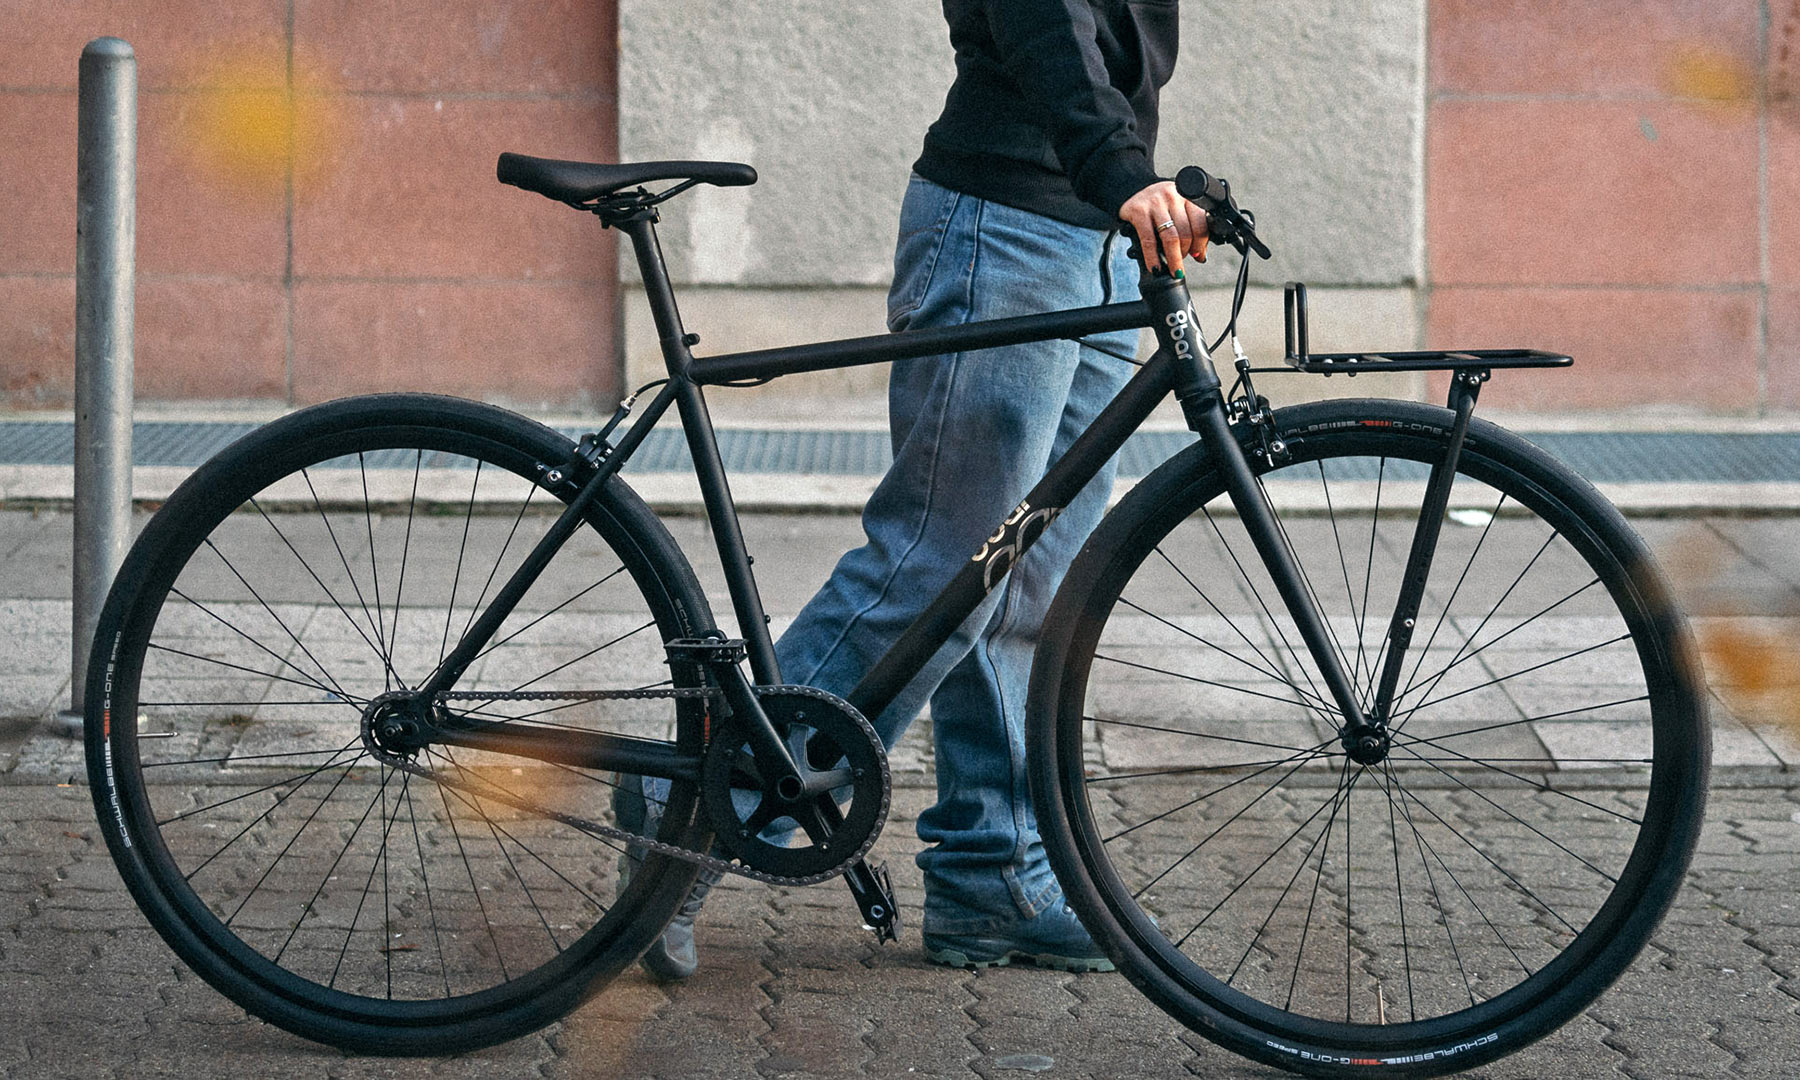 8bar Neukln steel v2 versatile affordable fixie singlespeed bike, photo by Stefan Haehnel, urban commuter with rack